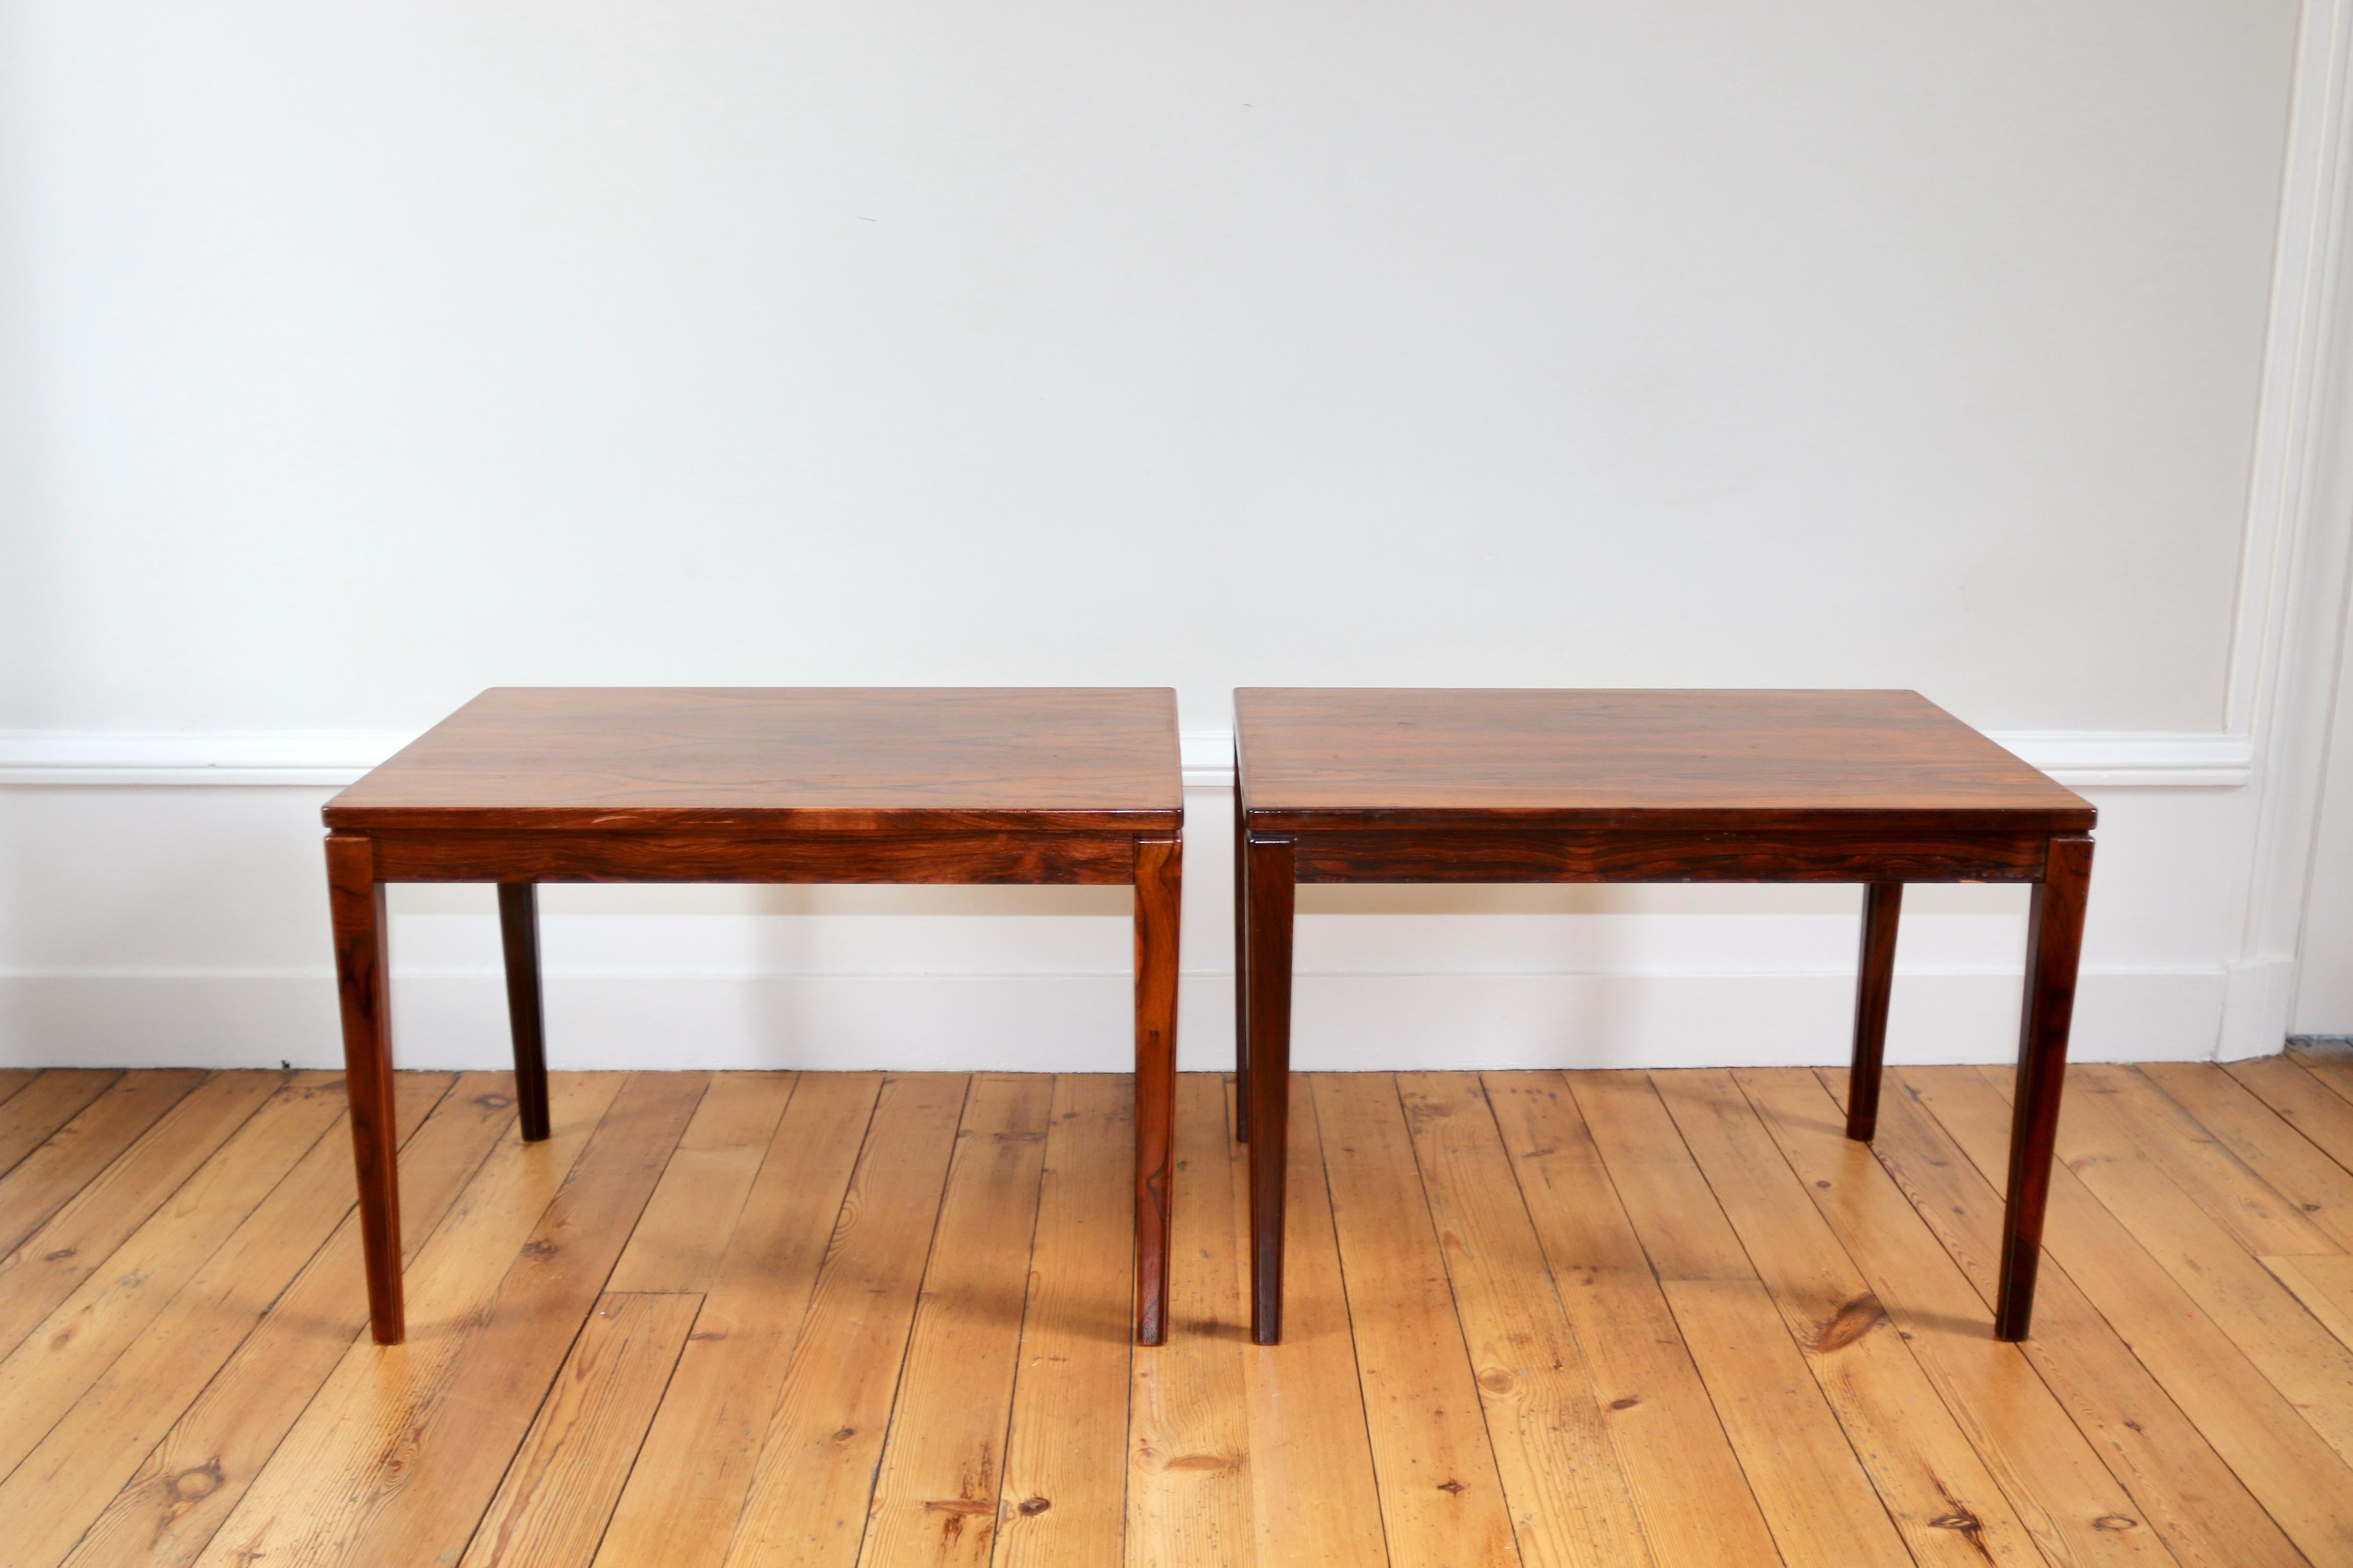 Par de tables danoises en palissandre de Rio des années 60

en excellent état

dimensiones : largeur 45 cm x longueur 65 cm x hauteur 45 cm